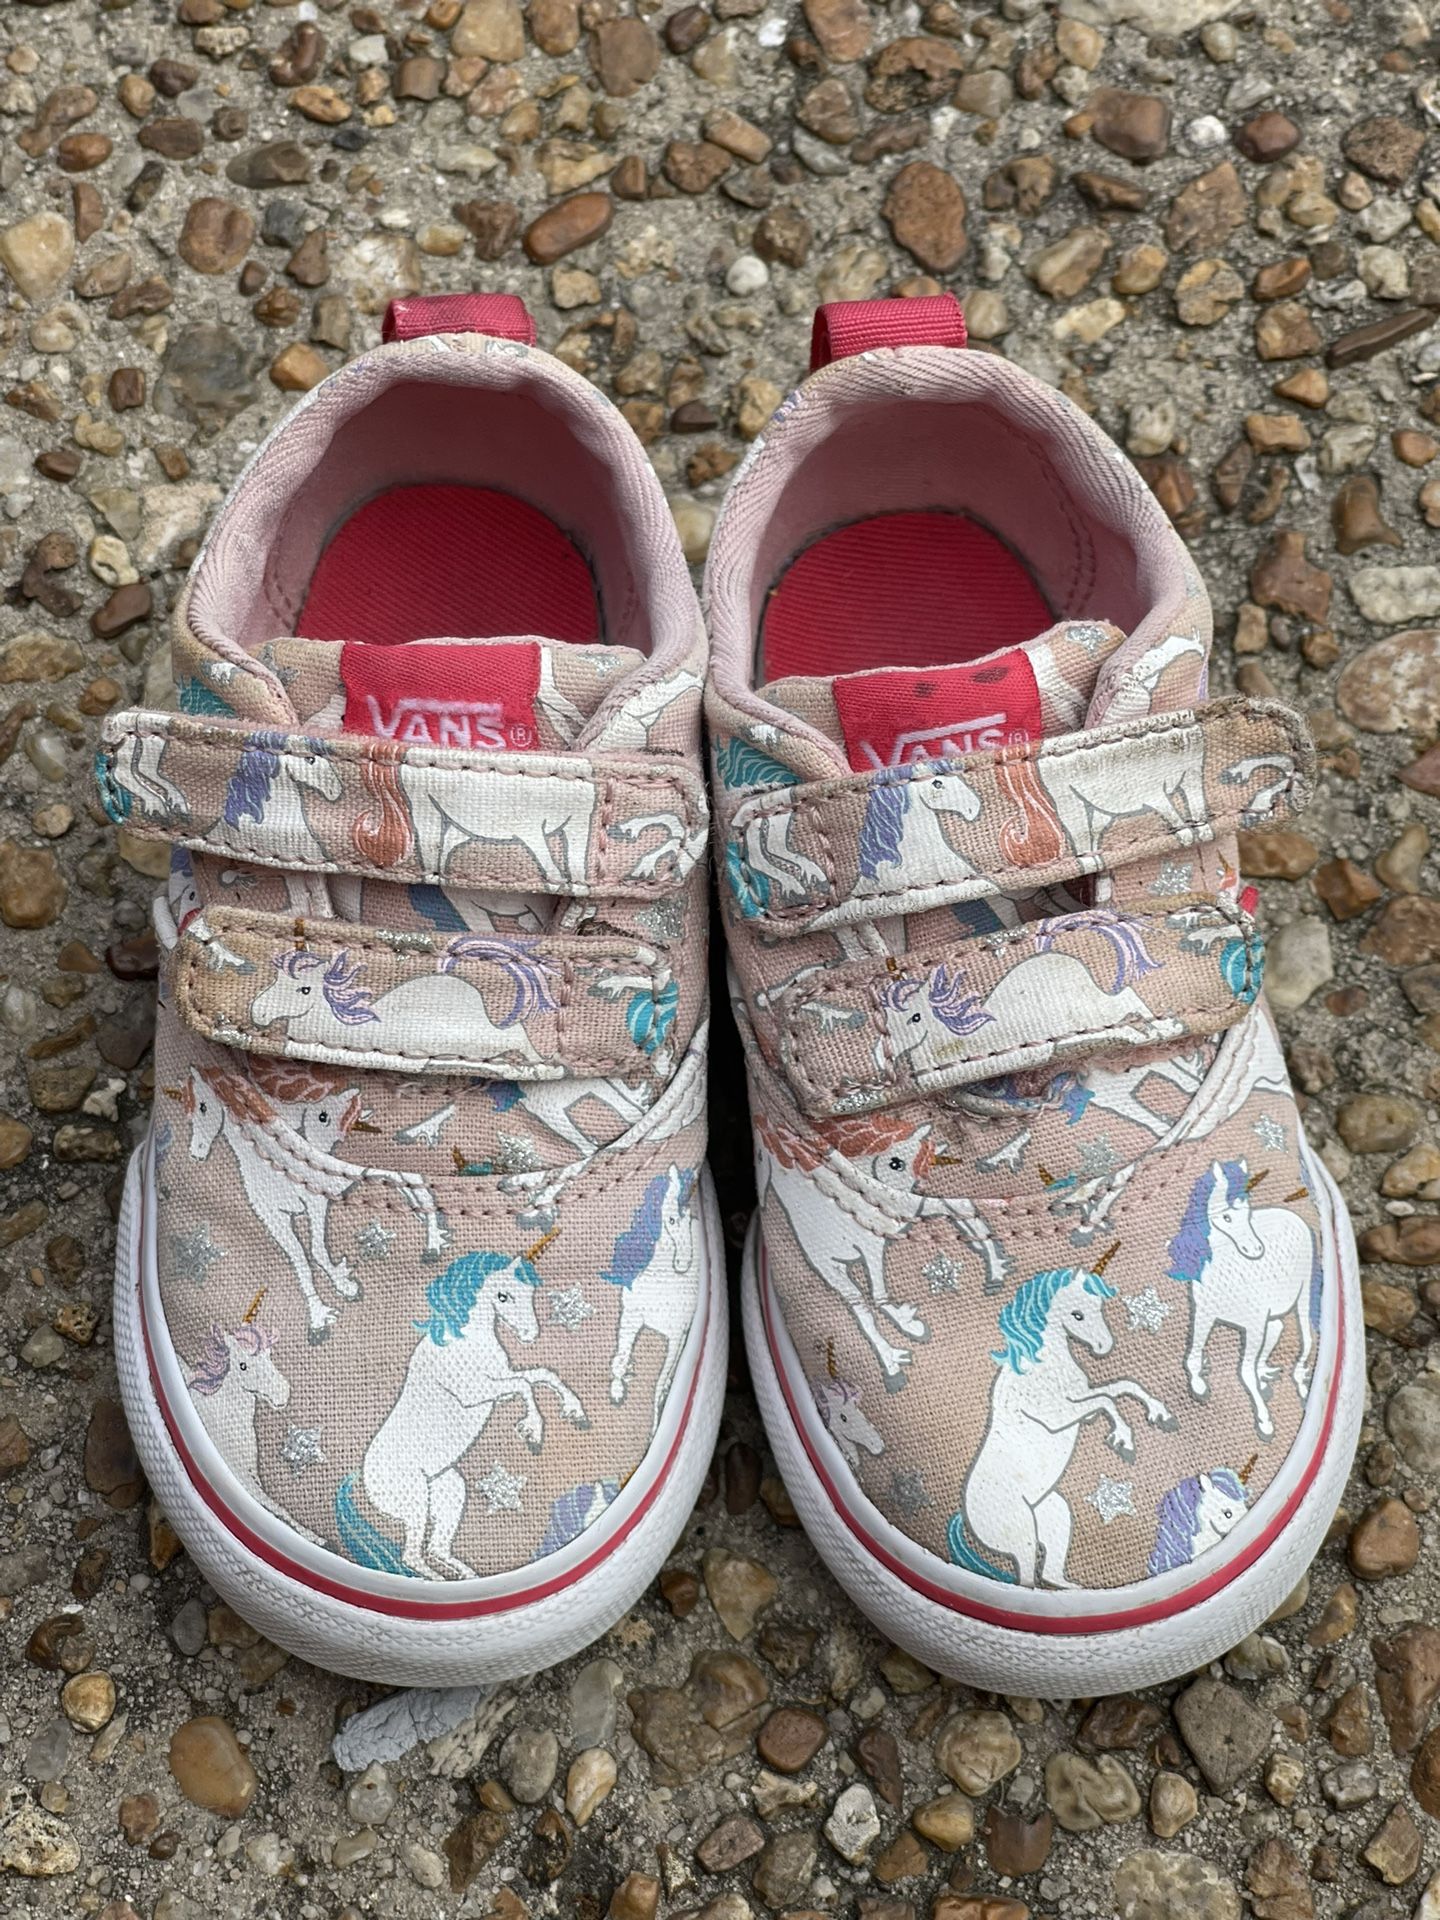 Infant/Toddler Girls Shoes size 6 - Vans Doheny Unicorn Stars Pink Skater Skate Sneakers - Velcro